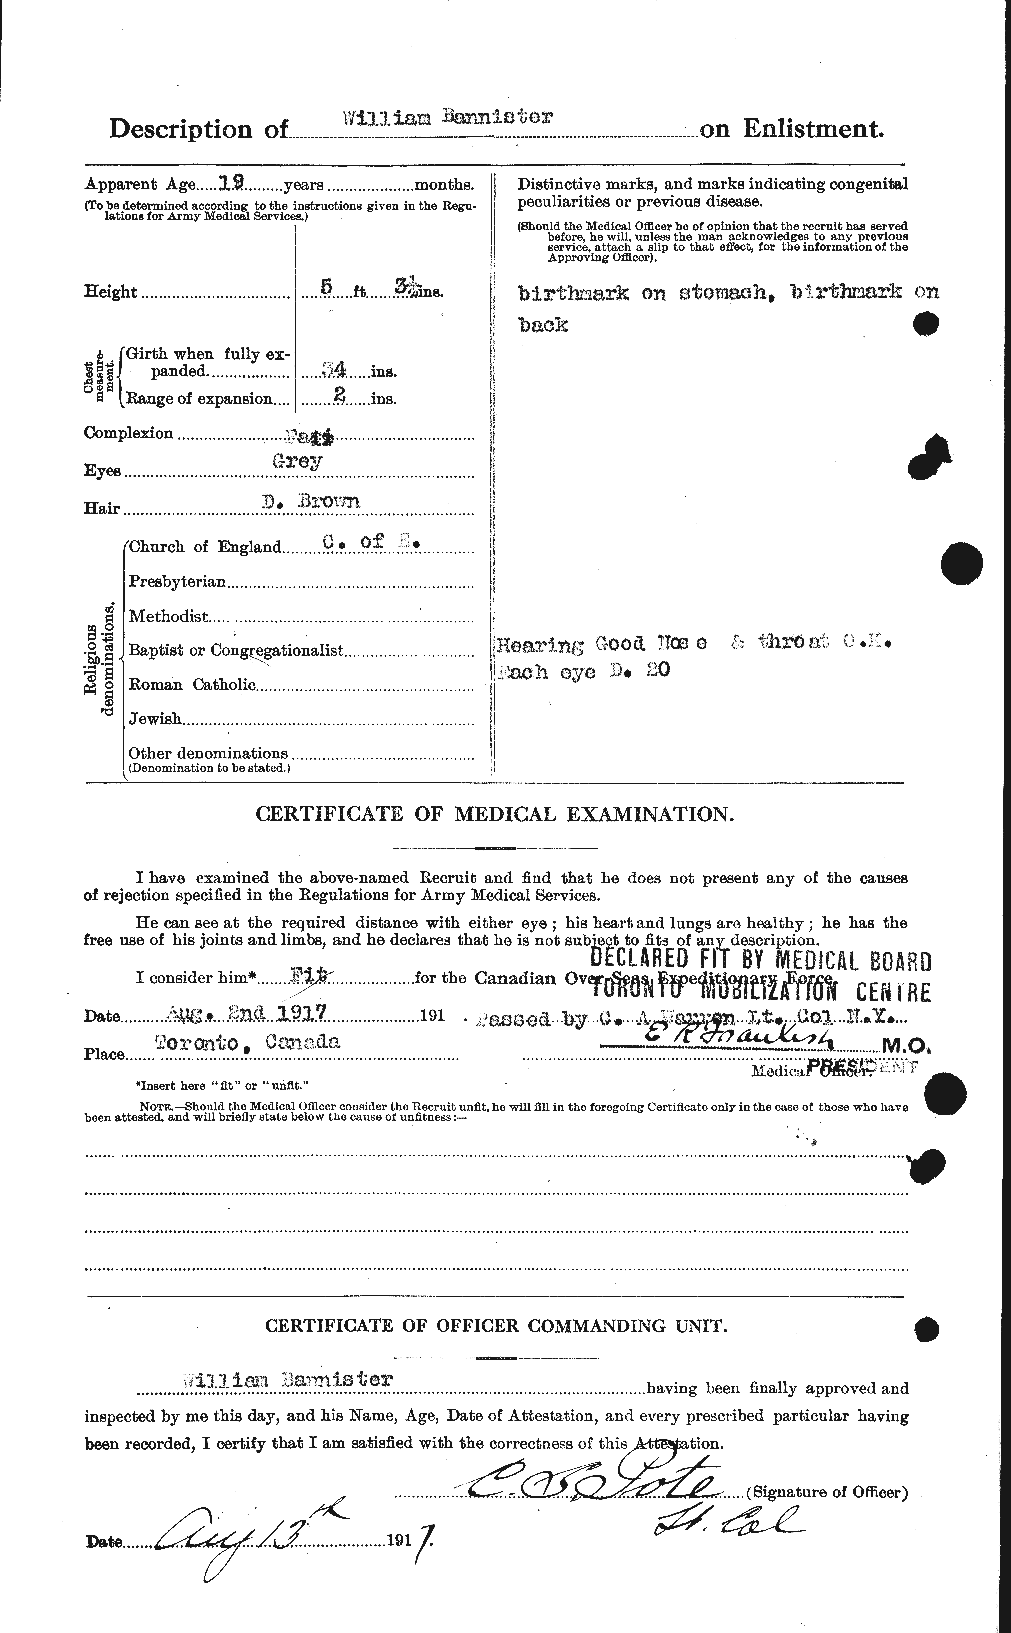 Dossiers du Personnel de la Première Guerre mondiale - CEC 224754b